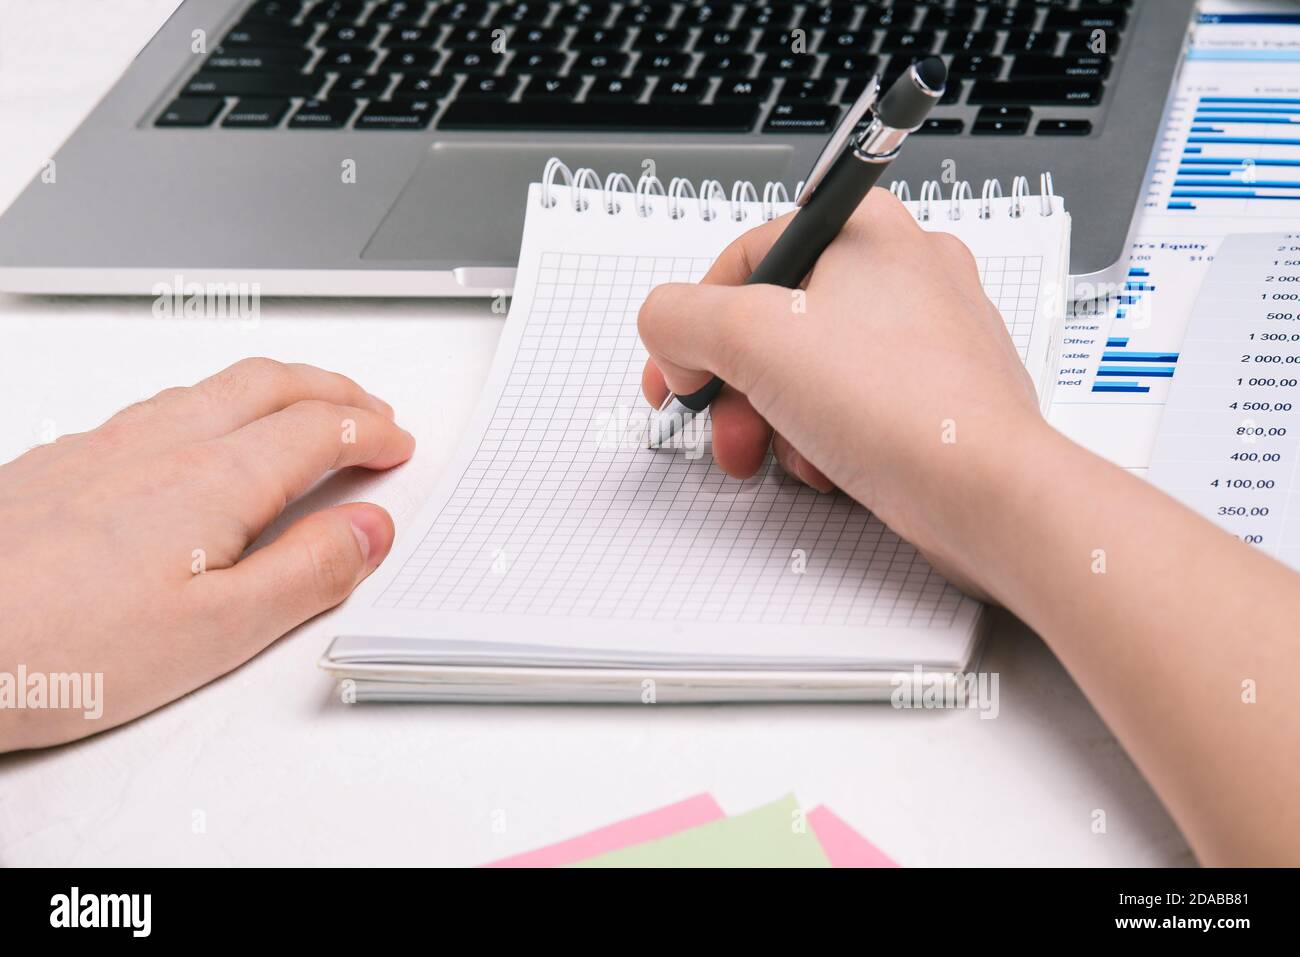 Die Frau am Tisch schreibt in einem Notizbuch. Mann, der einen Stift über ein leeres Notizbuch hält. Schreibtisch mit Computer und Finanzkarten Stockfoto